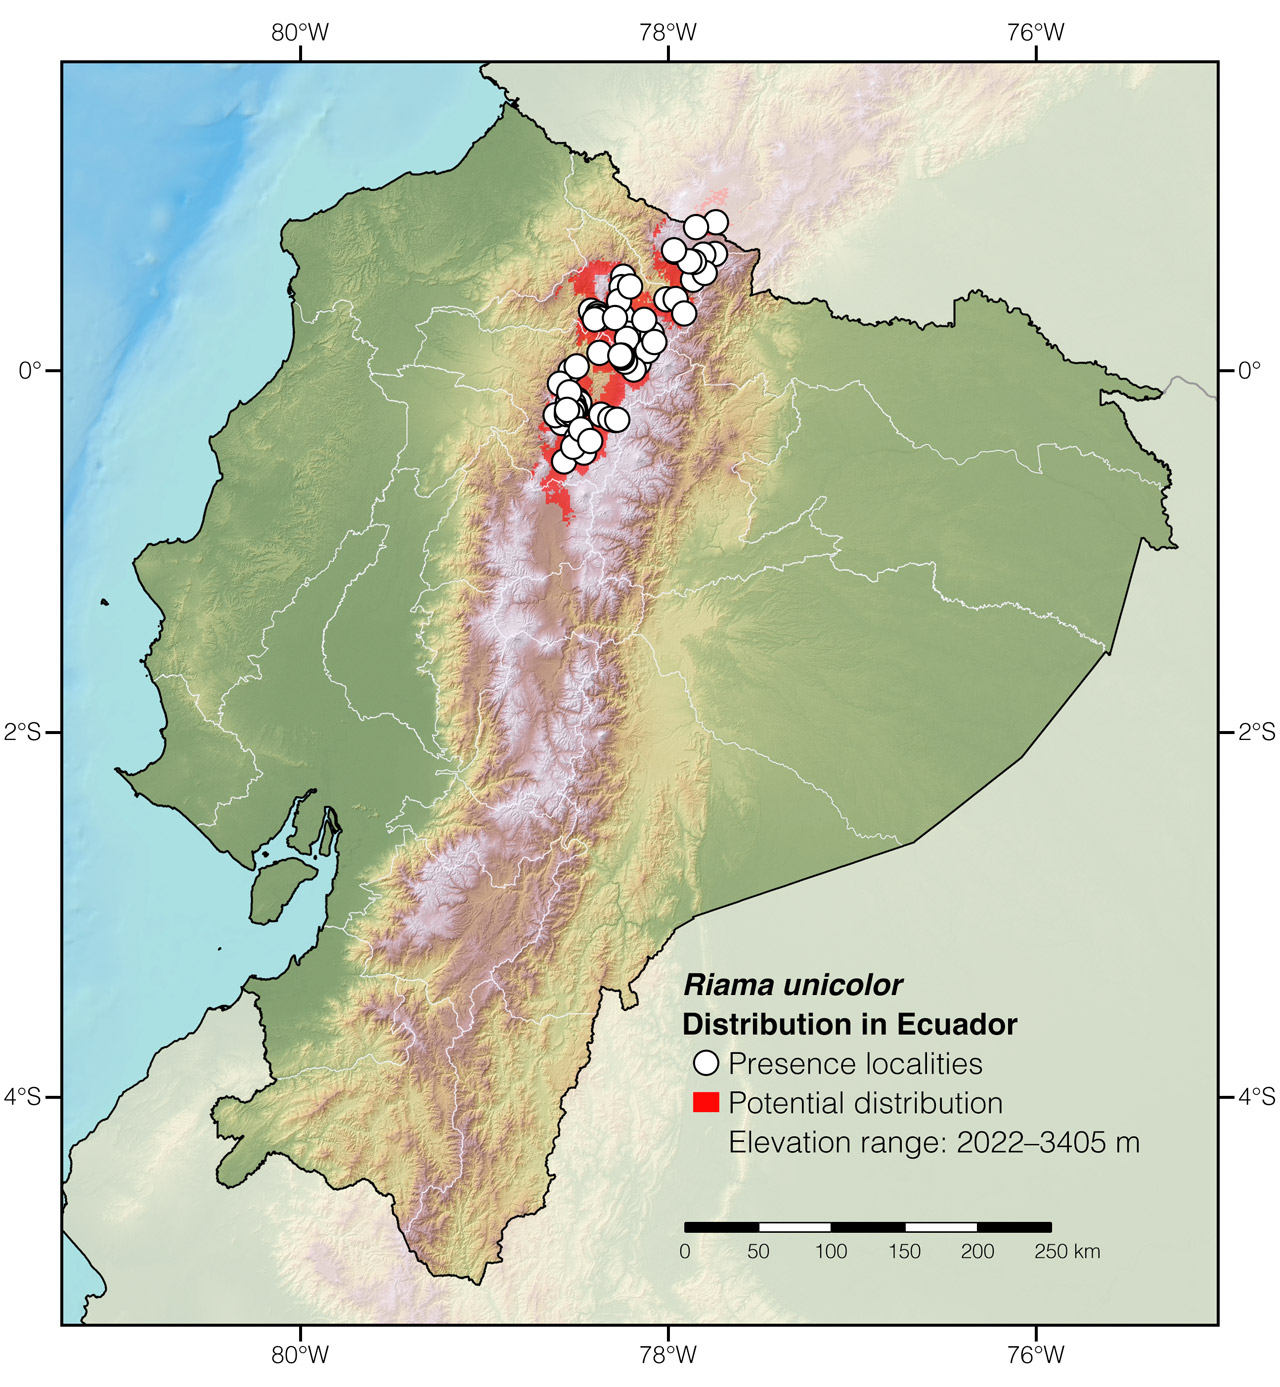 Distribution of Riama unicolor in Ecuador